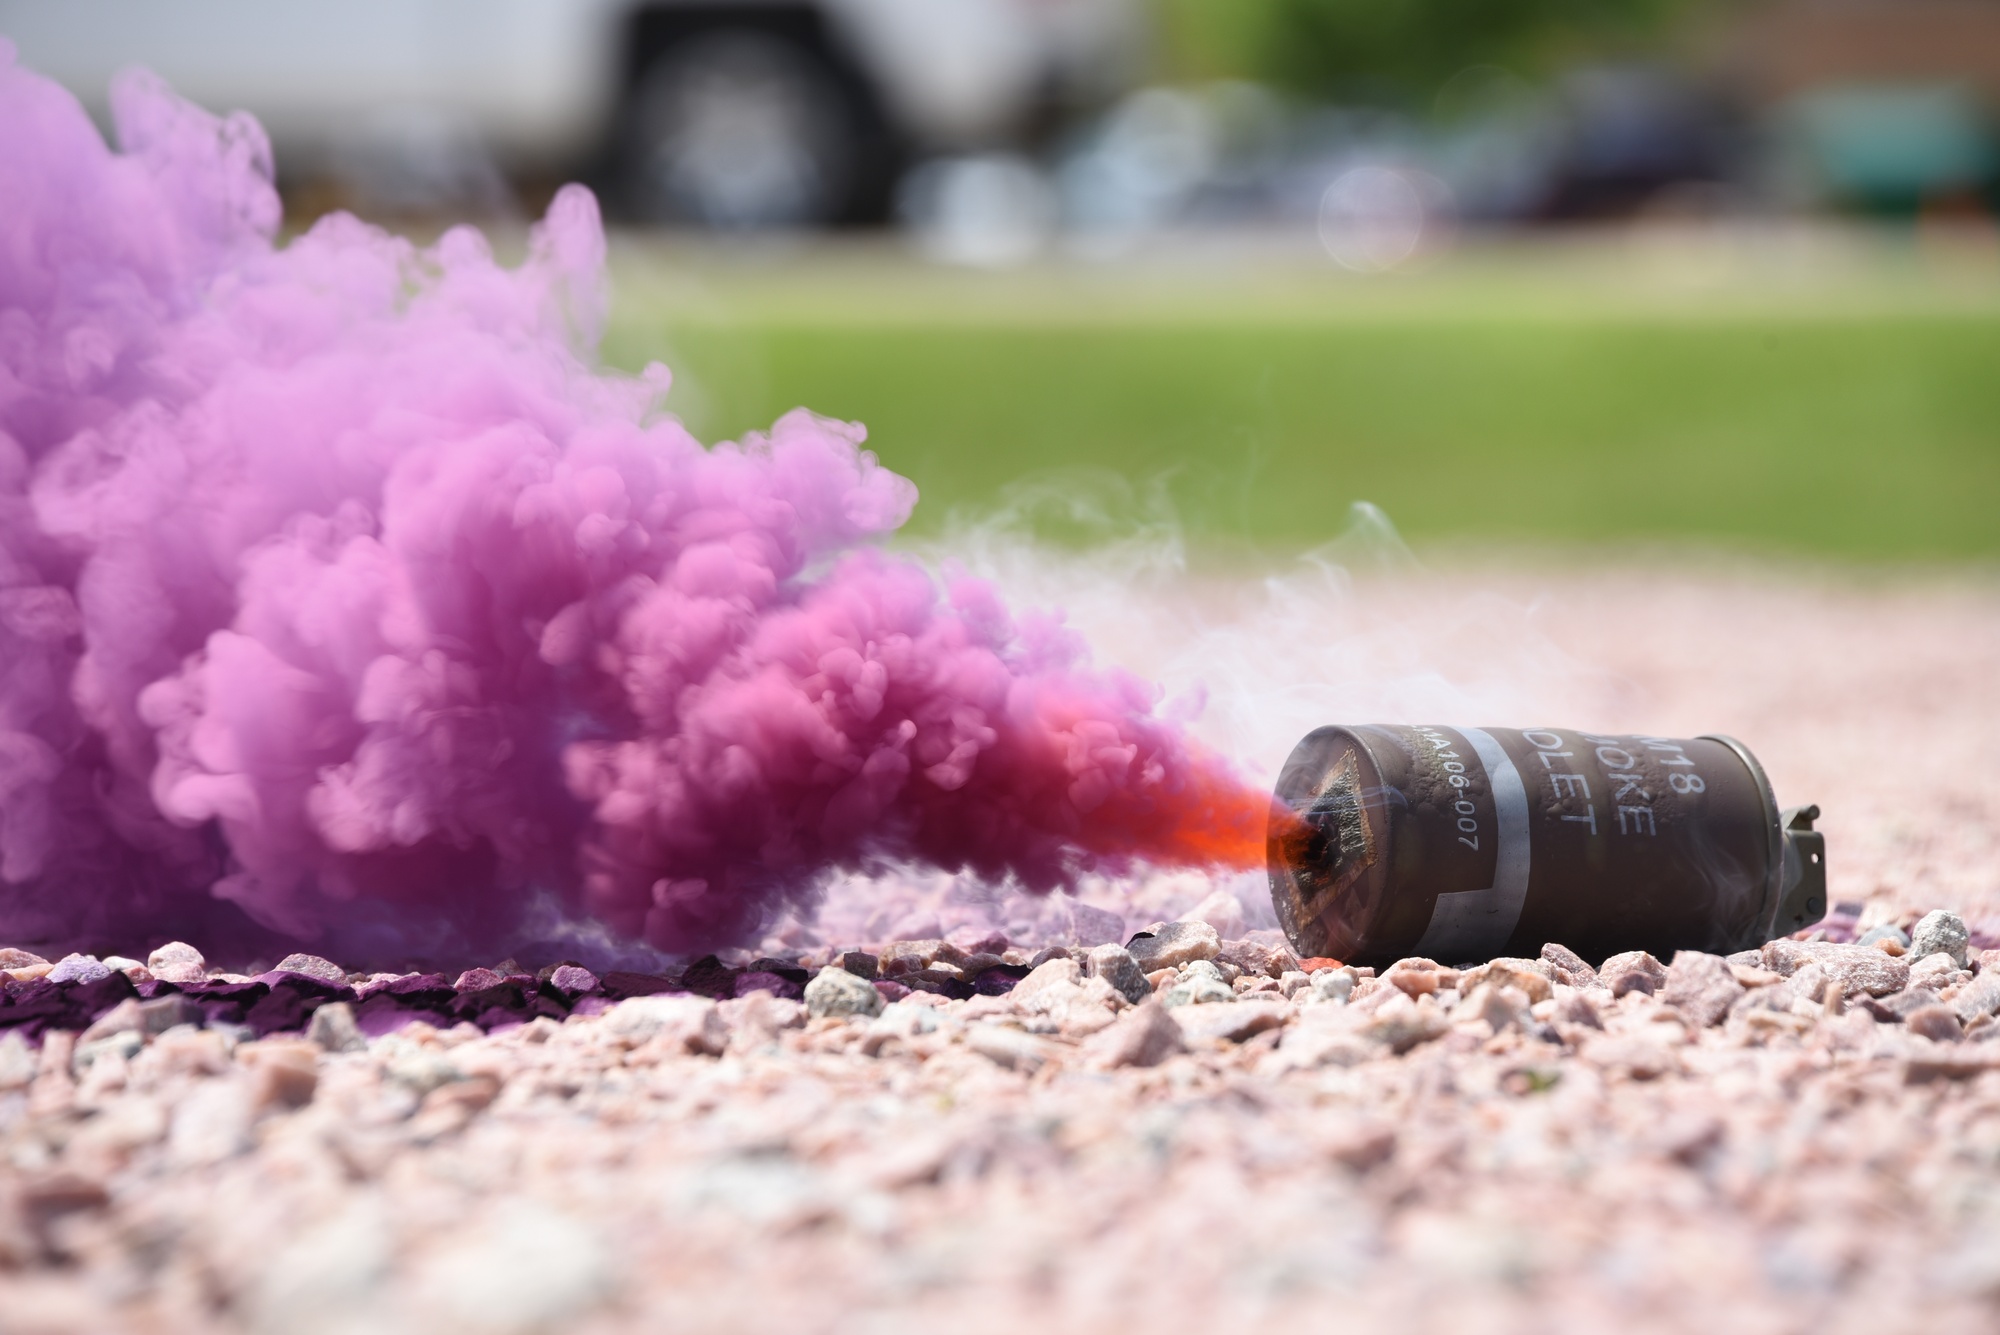 DVIDS - Images - M18 Violet Smoke Grenade [Image 2 of 4]